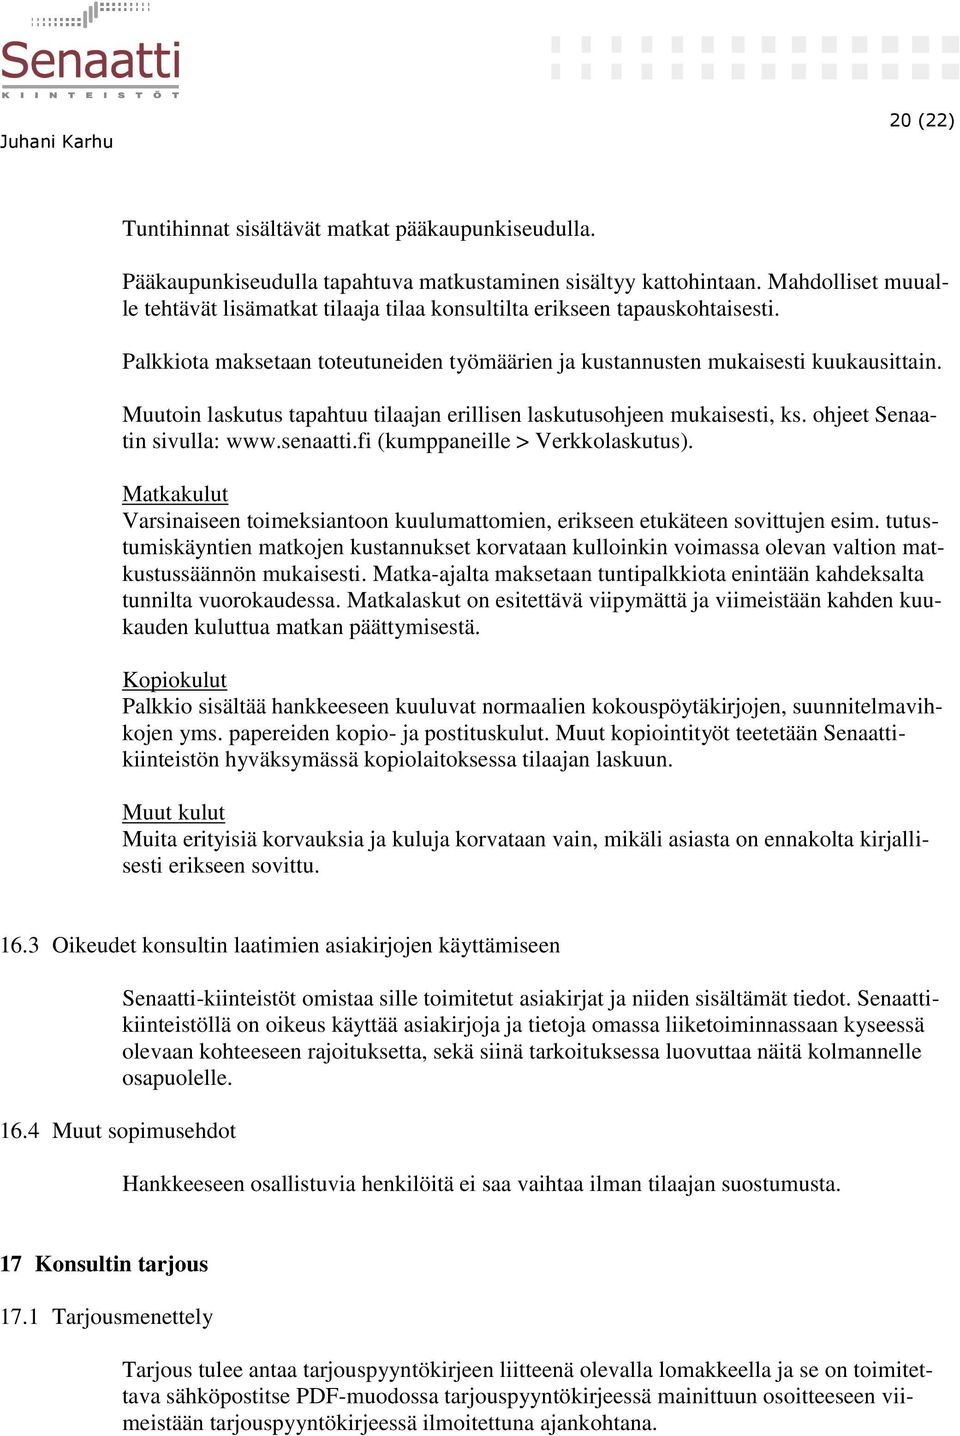 Muutoin laskutus tapahtuu tilaajan erillisen laskutusohjeen mukaisesti, ks. ohjeet Senaatin sivulla: www.senaatti.fi (kumppaneille > Verkkolaskutus).